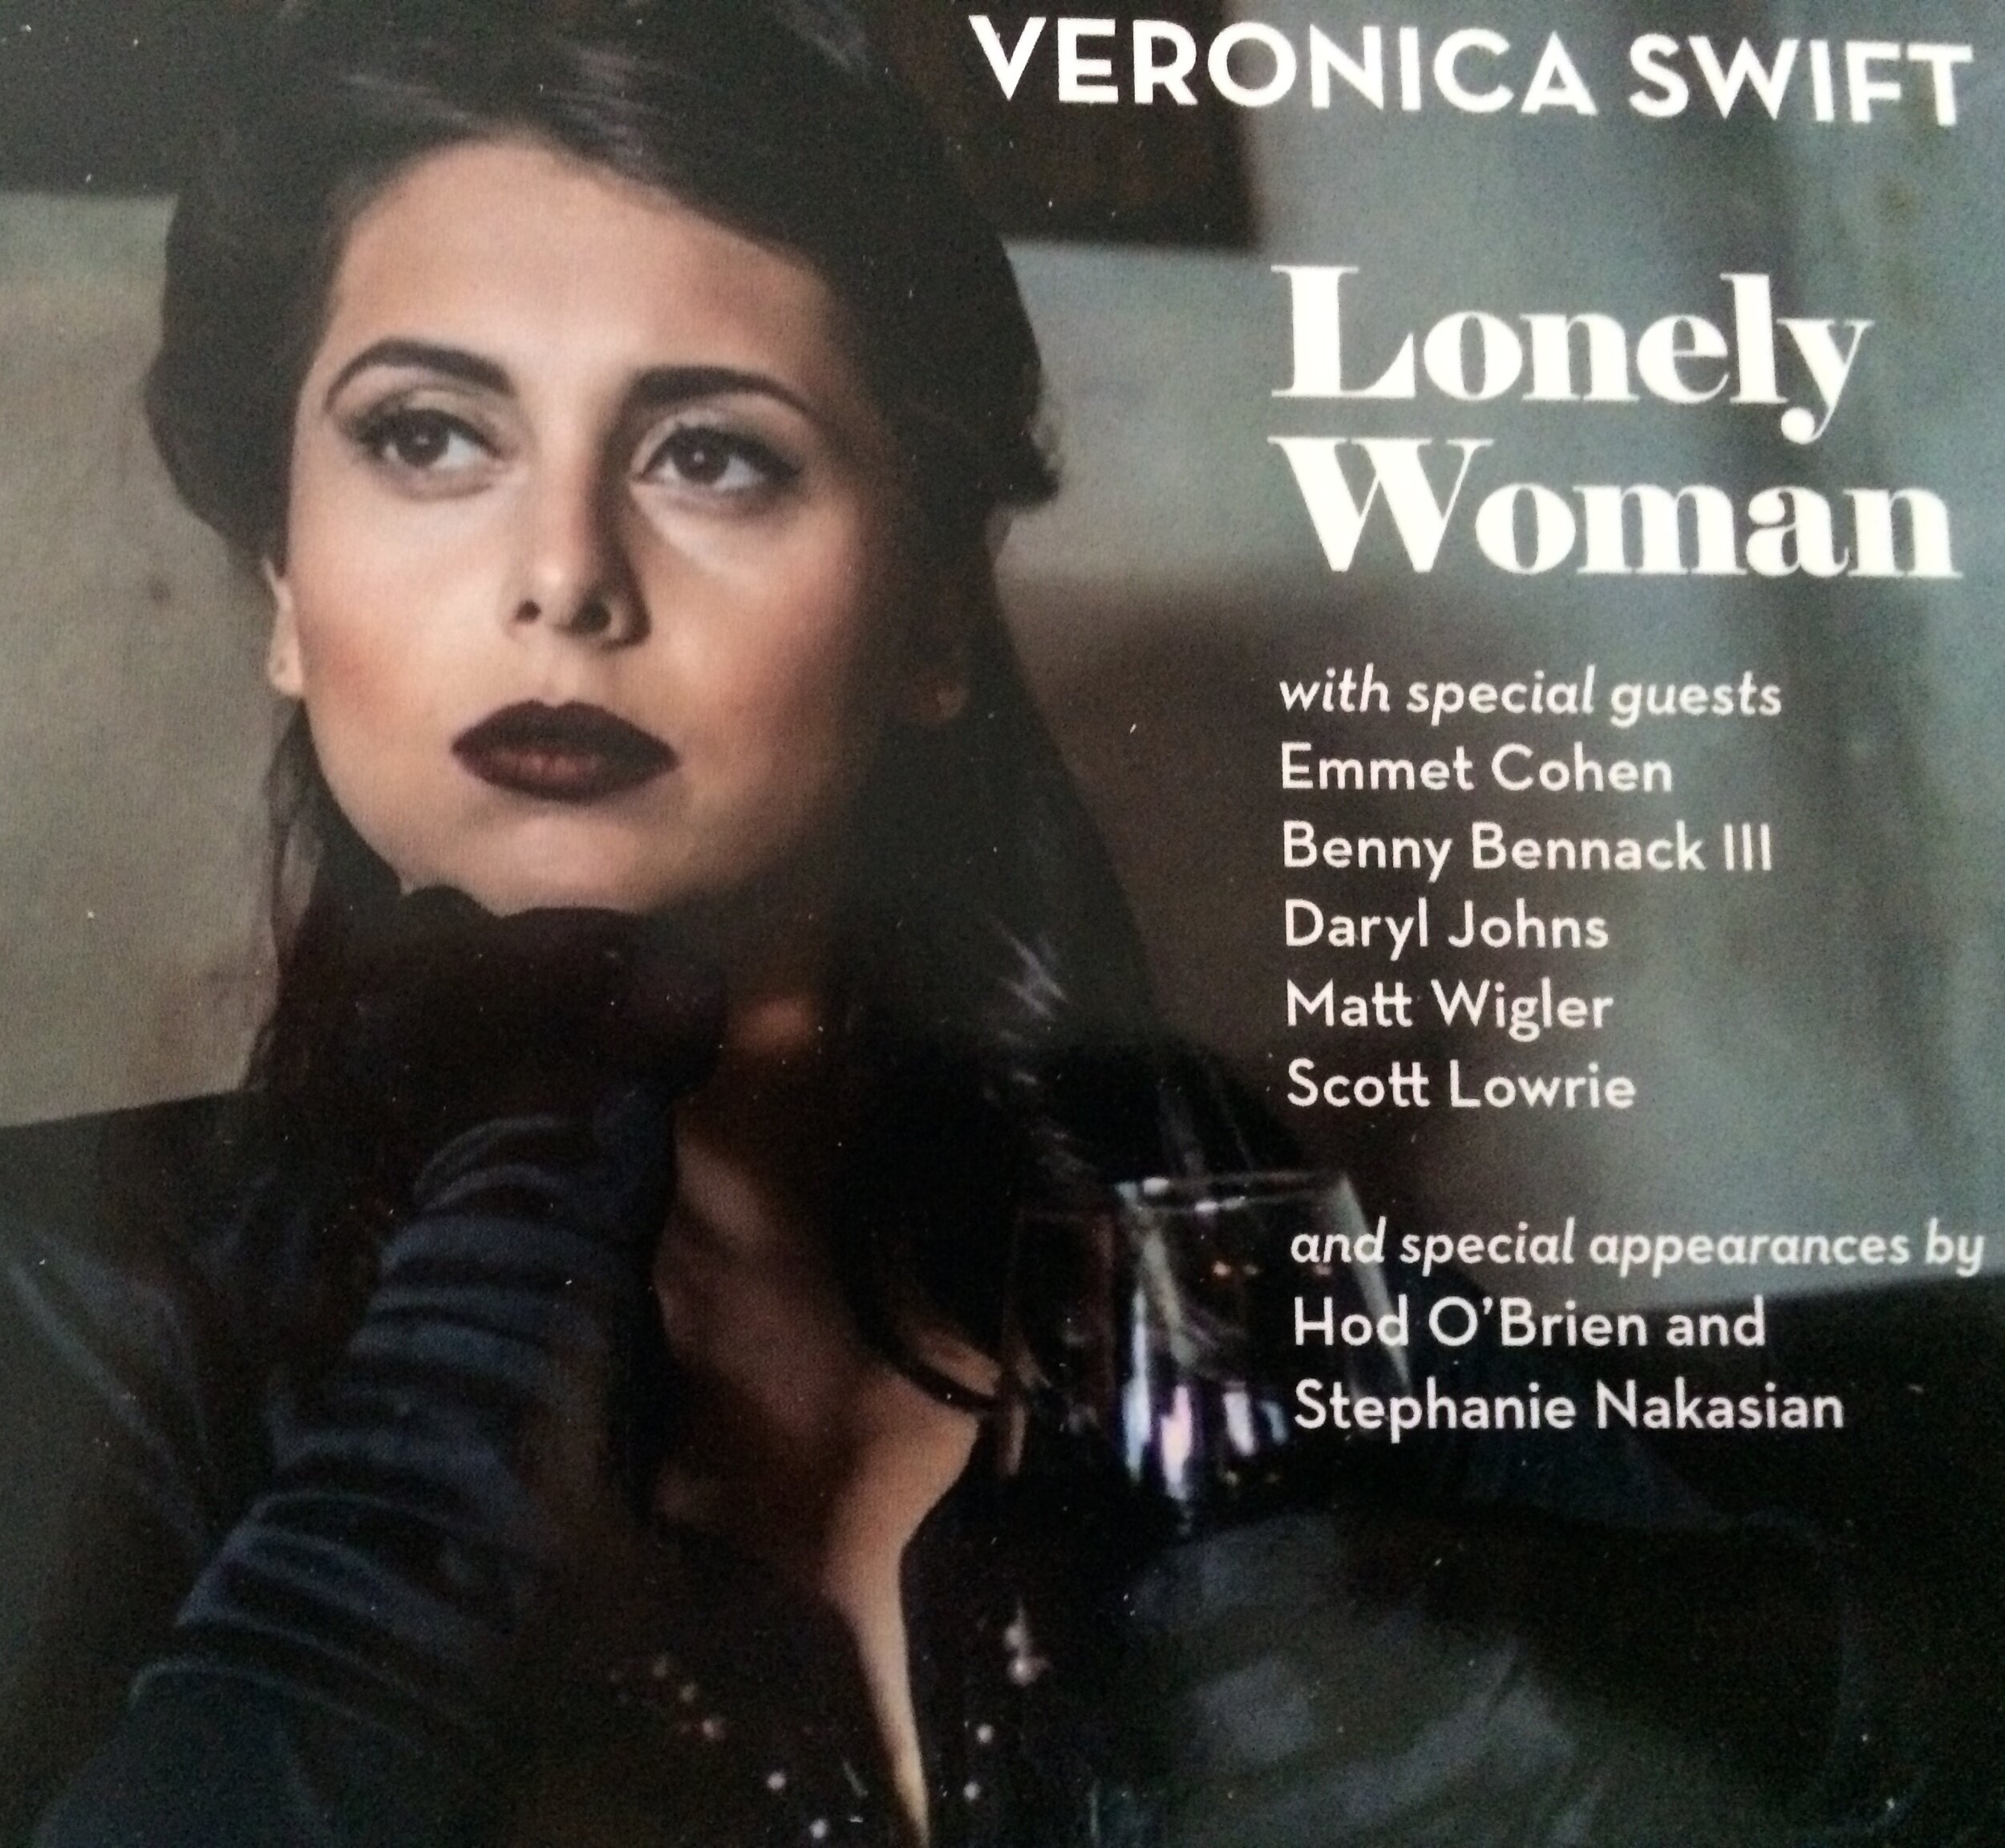 Matt appears on Veronica Swift "Lonely Woman" (2015)